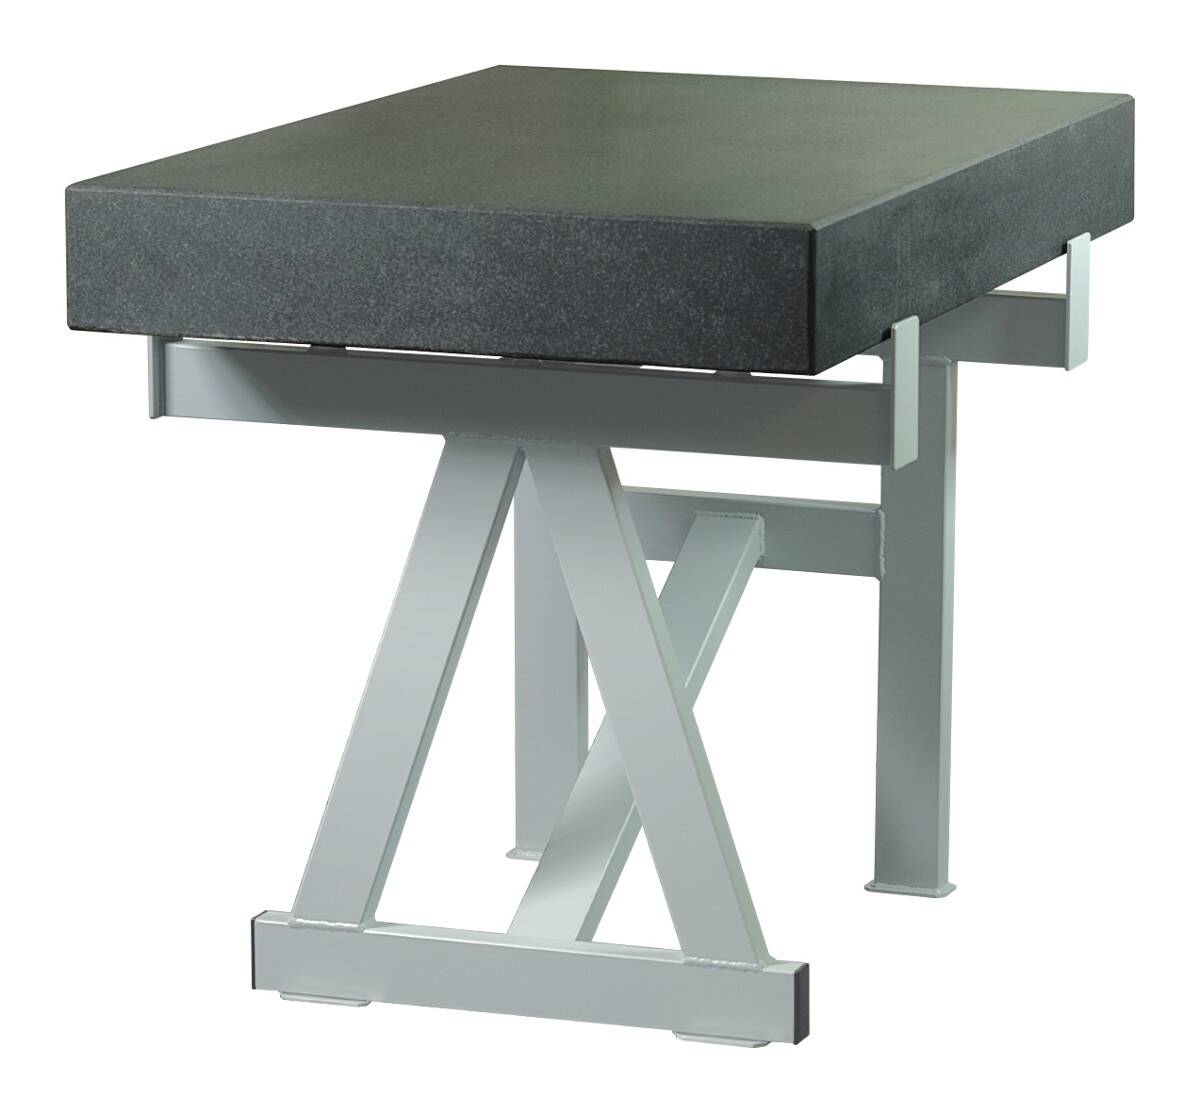 SCHUT stół do płyty pomiarowej żeliwnej 1500x1000mm 131.022